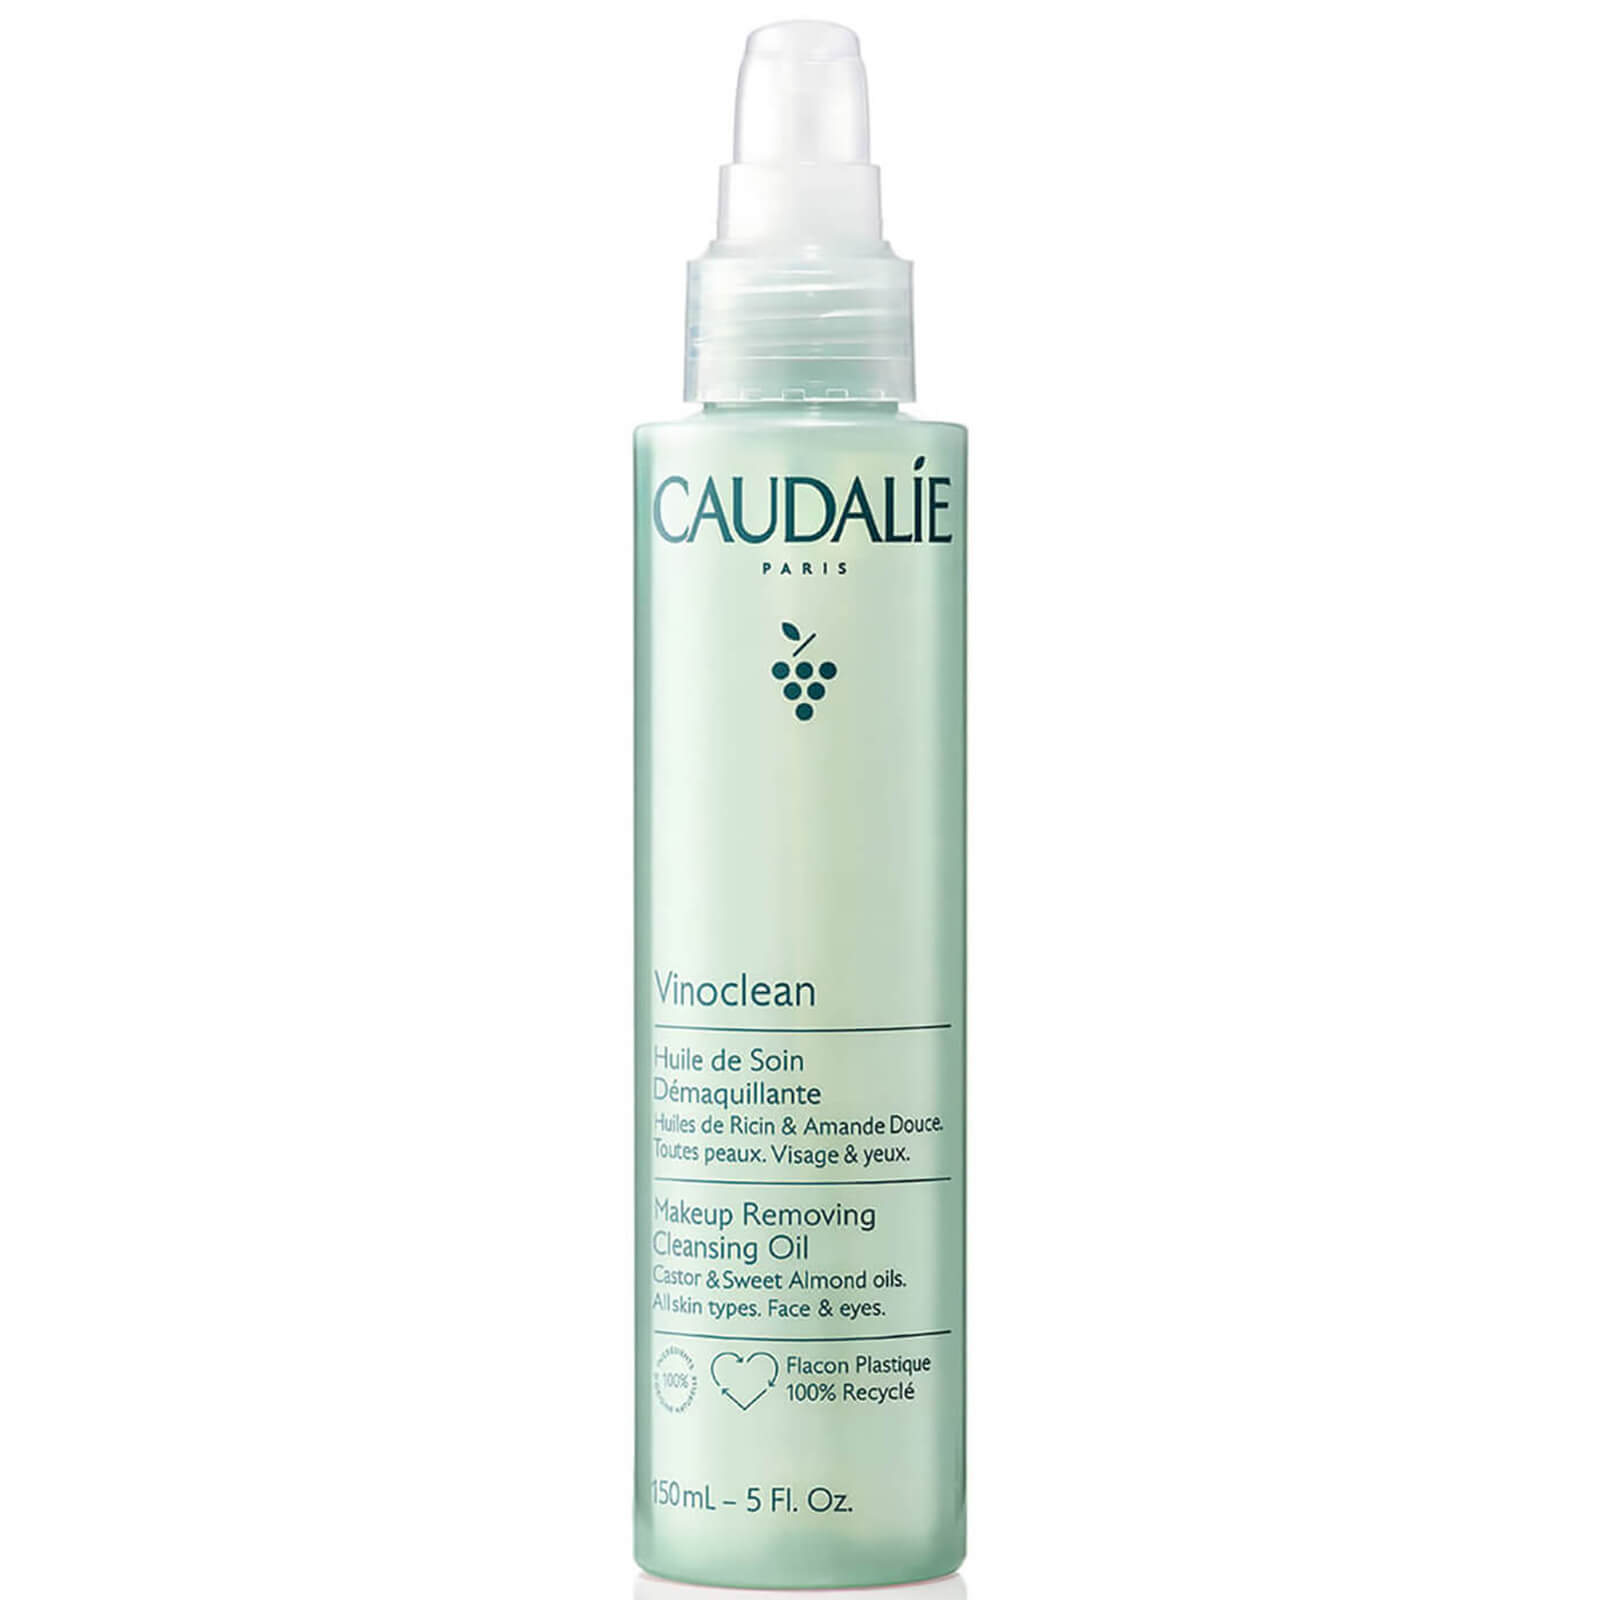 Caudalíe Vinoclean Makeup Removing Cleansing Oil 150ml In Blue